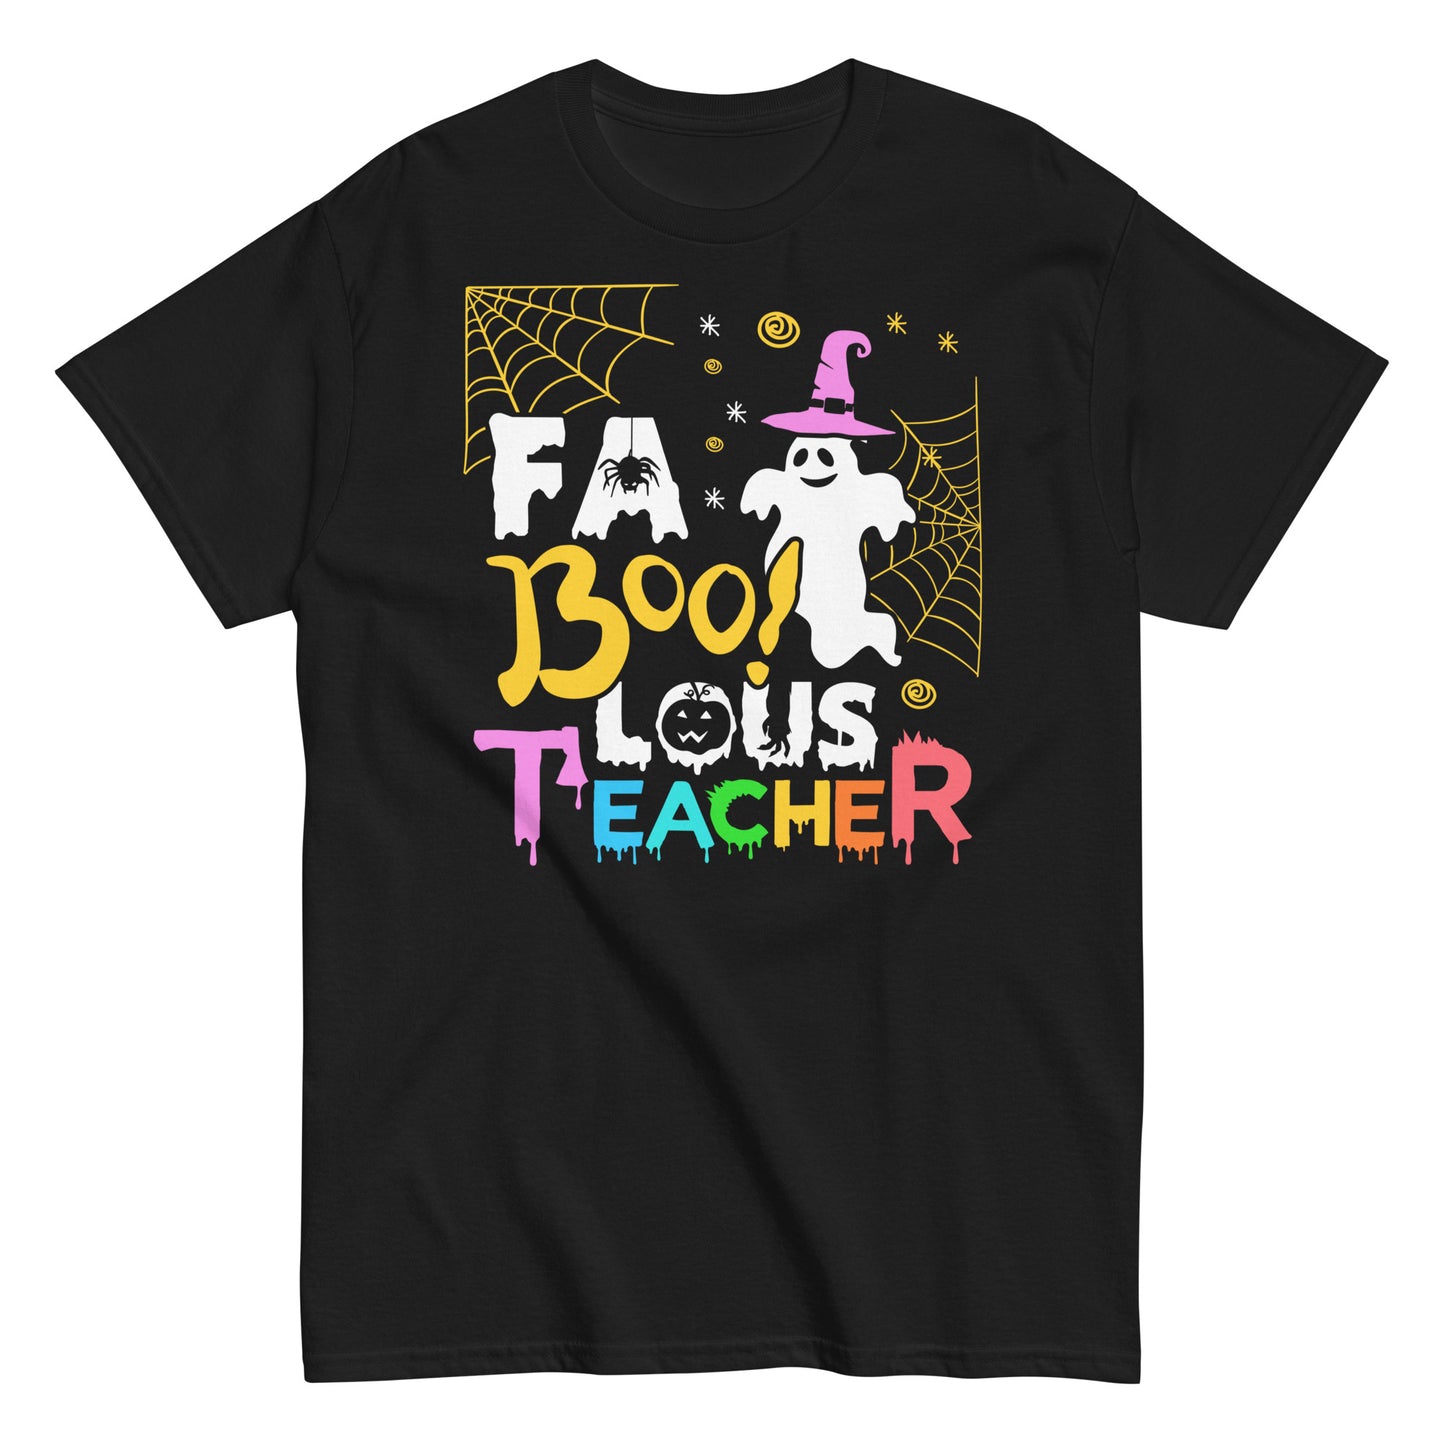 Fierce and Faboolous: Halloween Fun with Faboolous Teacher T-Shirt